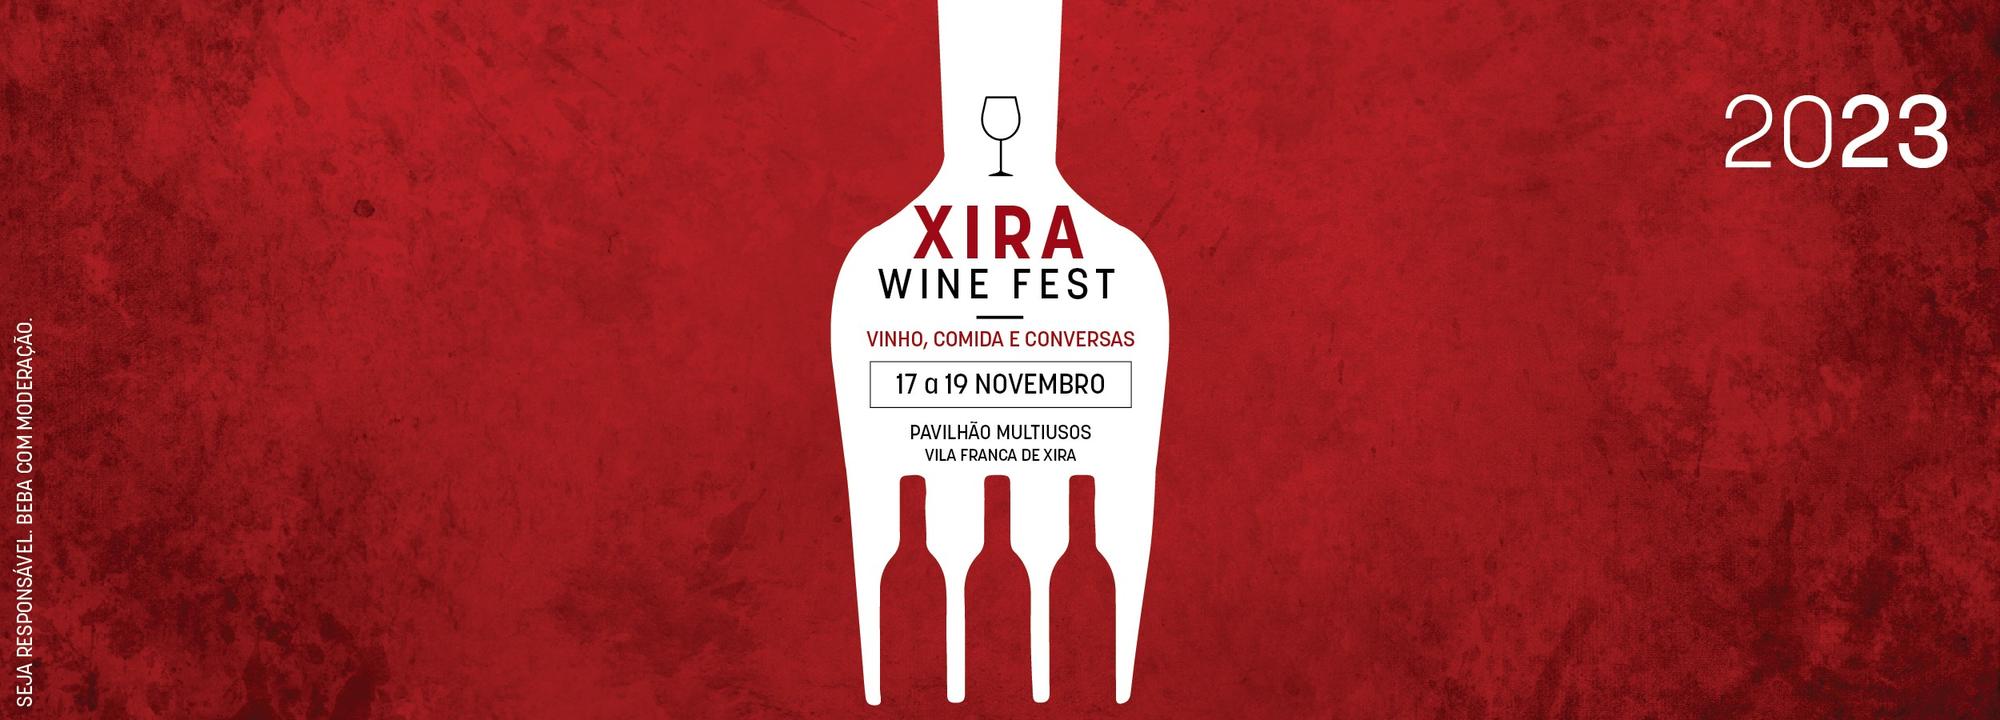 Xira Wine Fest: vinho, comida e conversas em Vila Franca de Xira